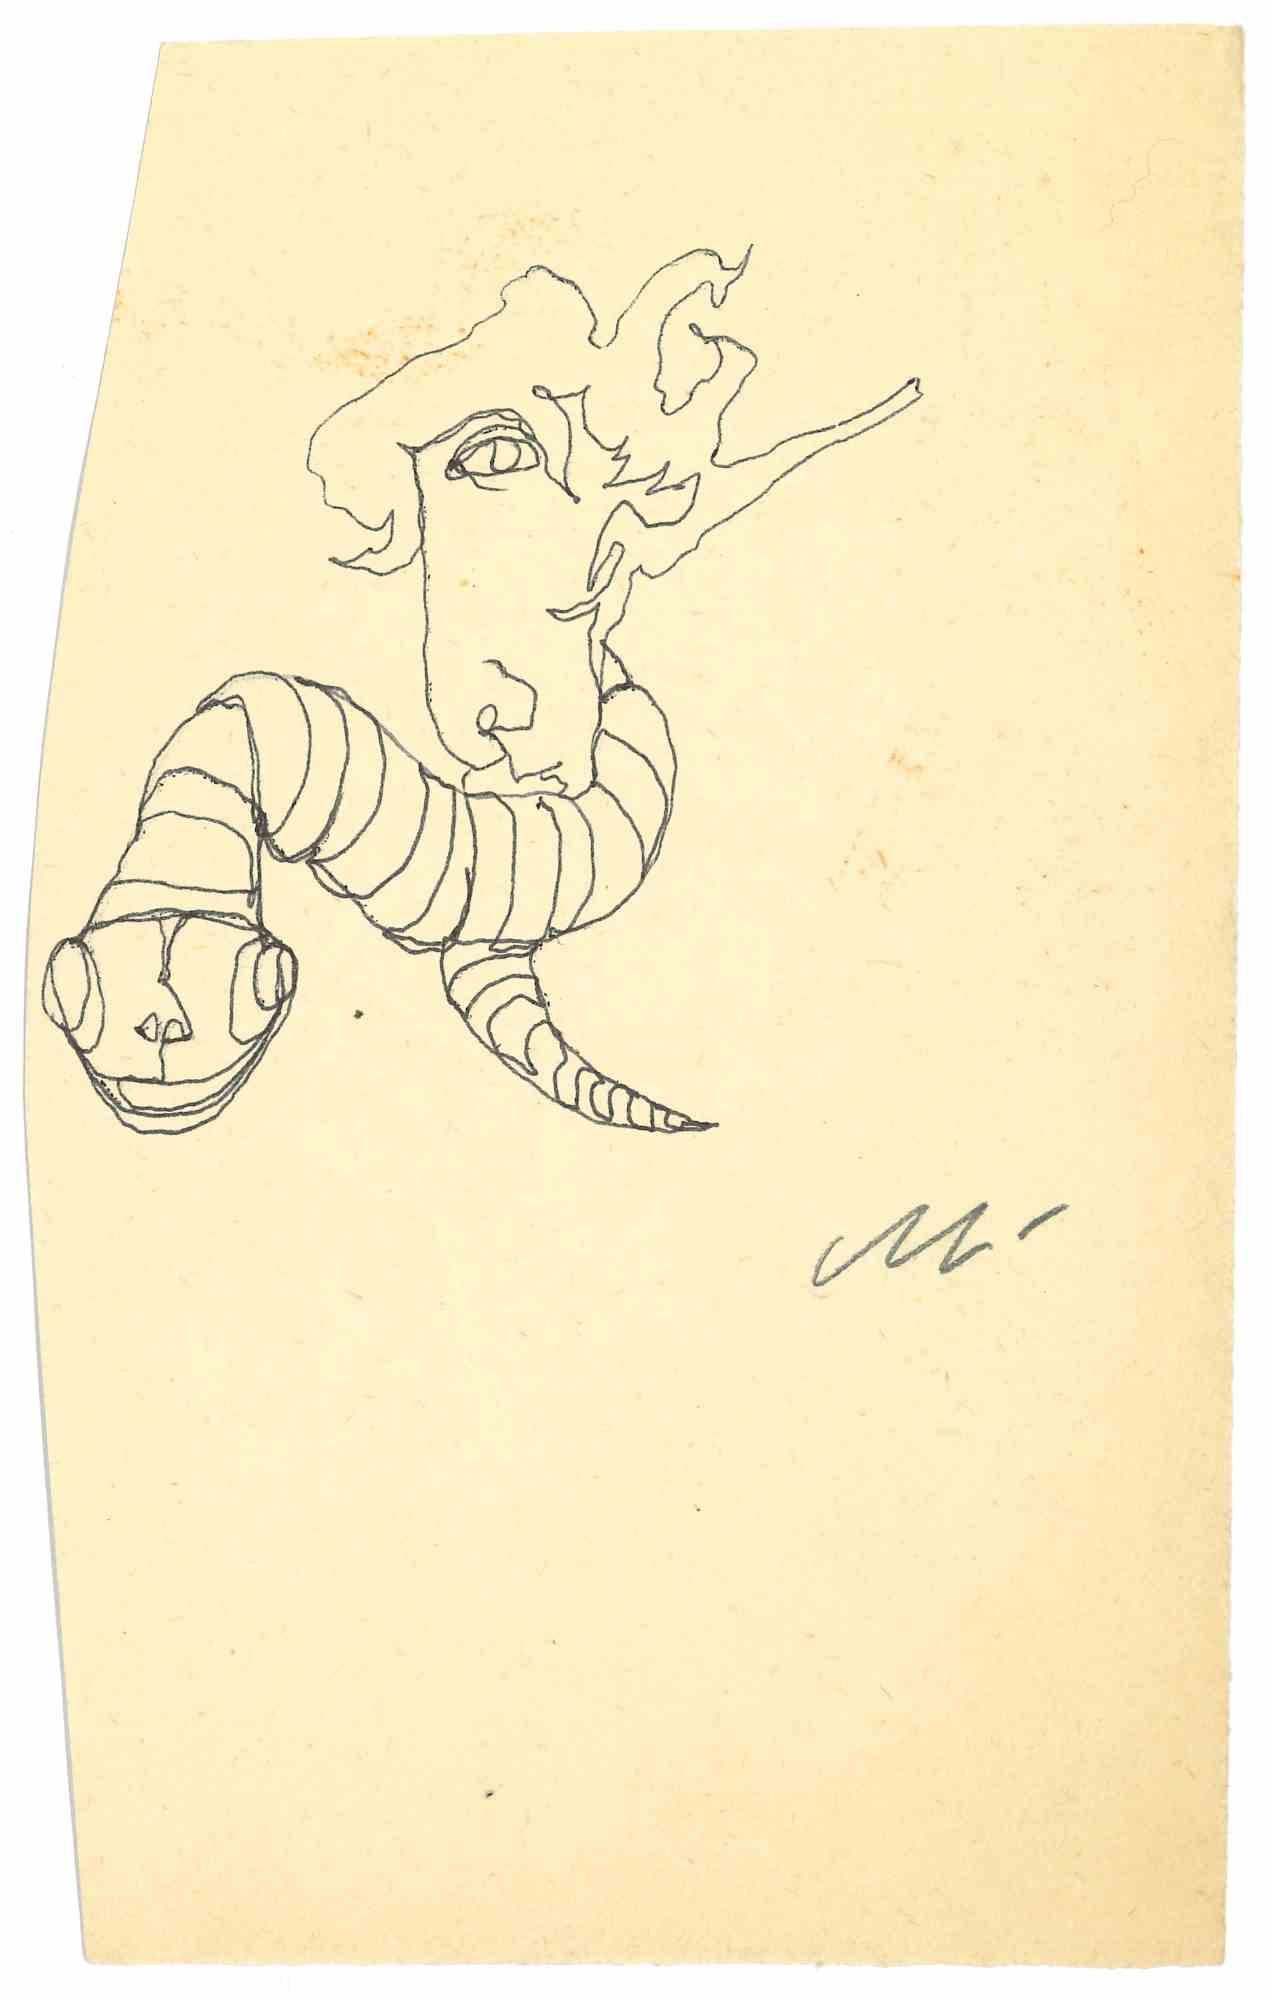 Creature ist eine Tuschezeichnung von Mino Maccari (1924-1989) aus der Mitte des 20. Jahrhunderts.

Handsigniert.

Guter Zustand mit leichten Stockflecken.

Mino Maccari (Siena, 1924-Rom, 16. Juni 1989) war ein italienischer Schriftsteller, Maler,